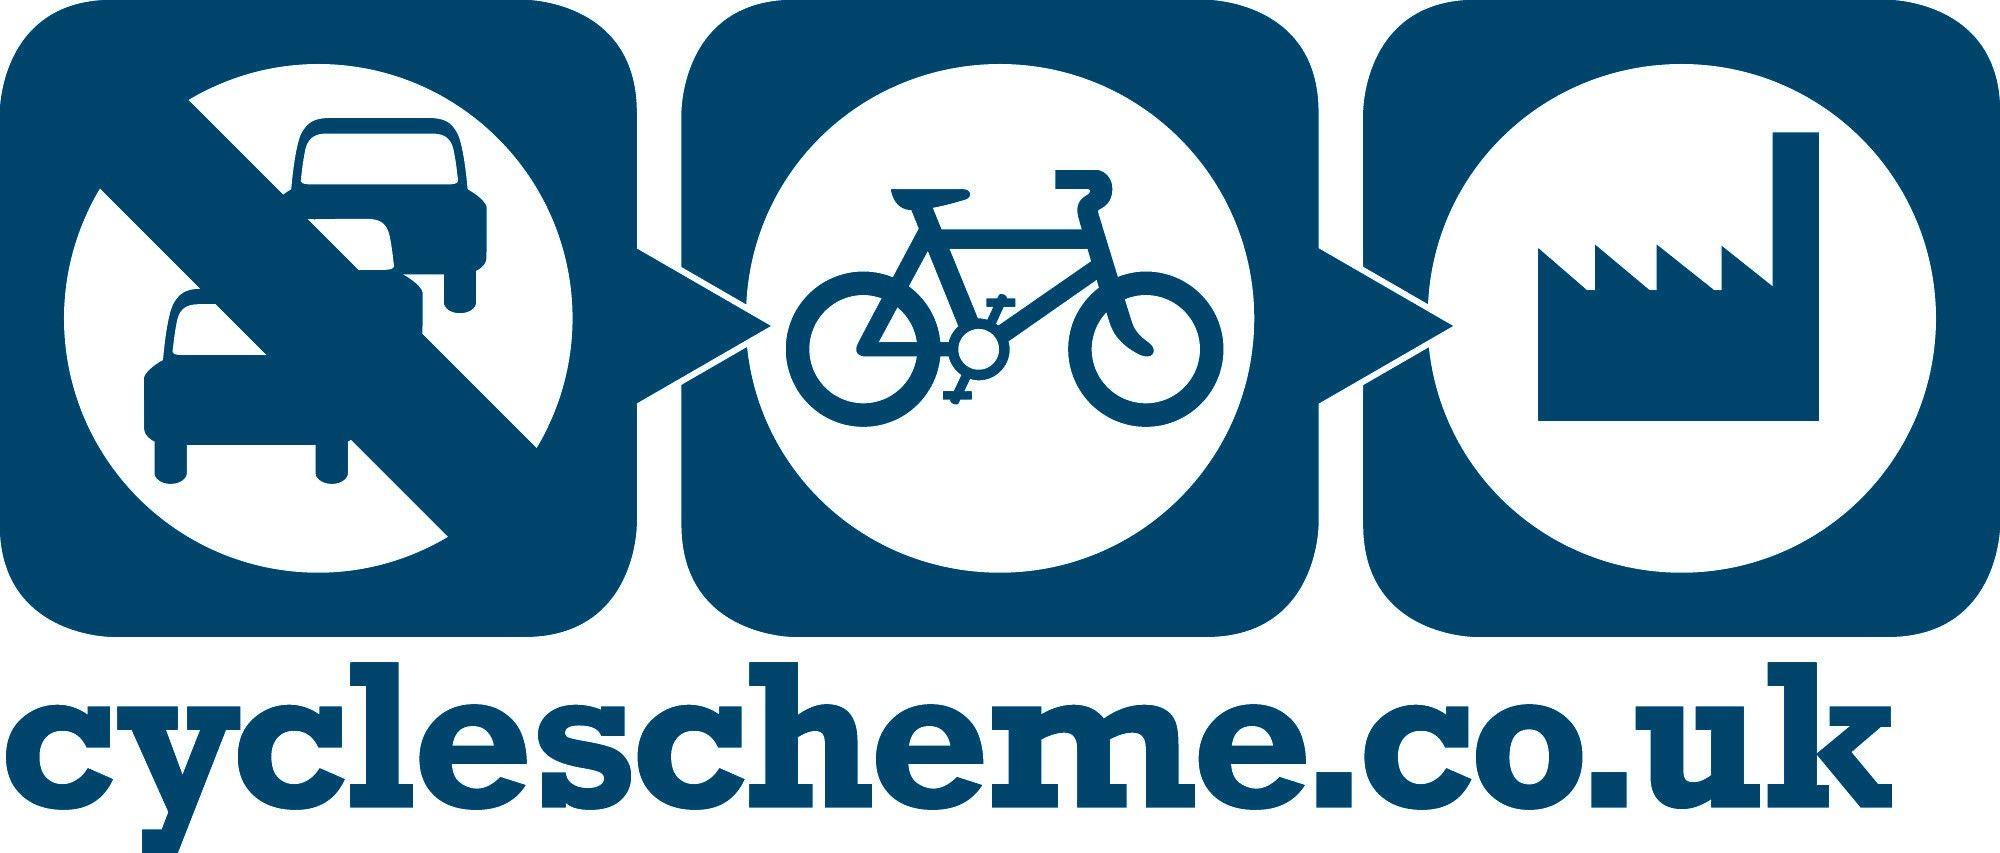 Serious Cycling Bike Shop Logo - CycleScheme and Tax Free Cycling Schemes Bike Shop UK